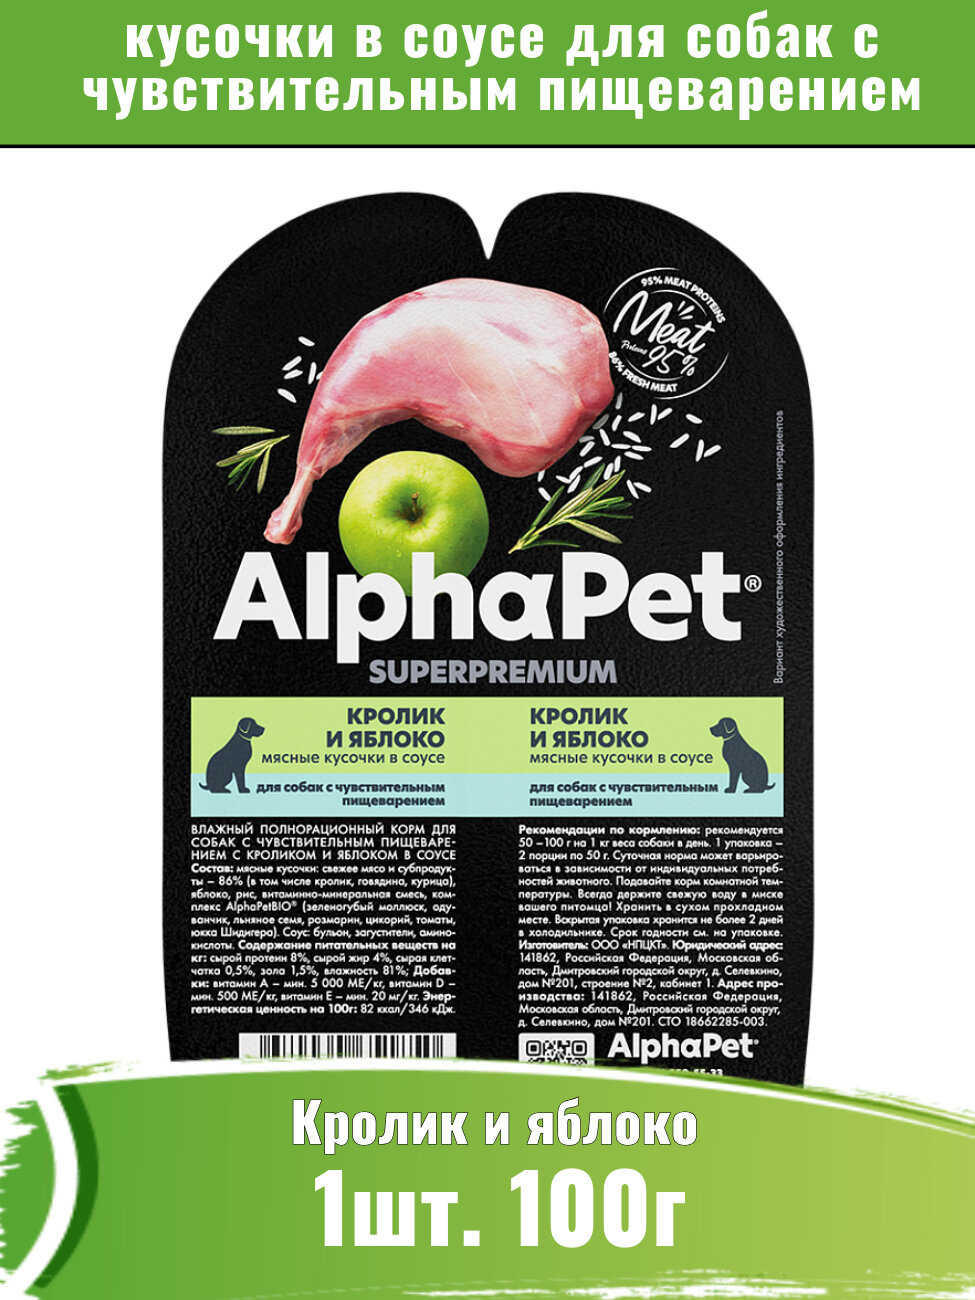 AlphaPet Superpremium (АльфаПет) 100г корм для собак, кролик и яблоко мясные кусочки в соусе